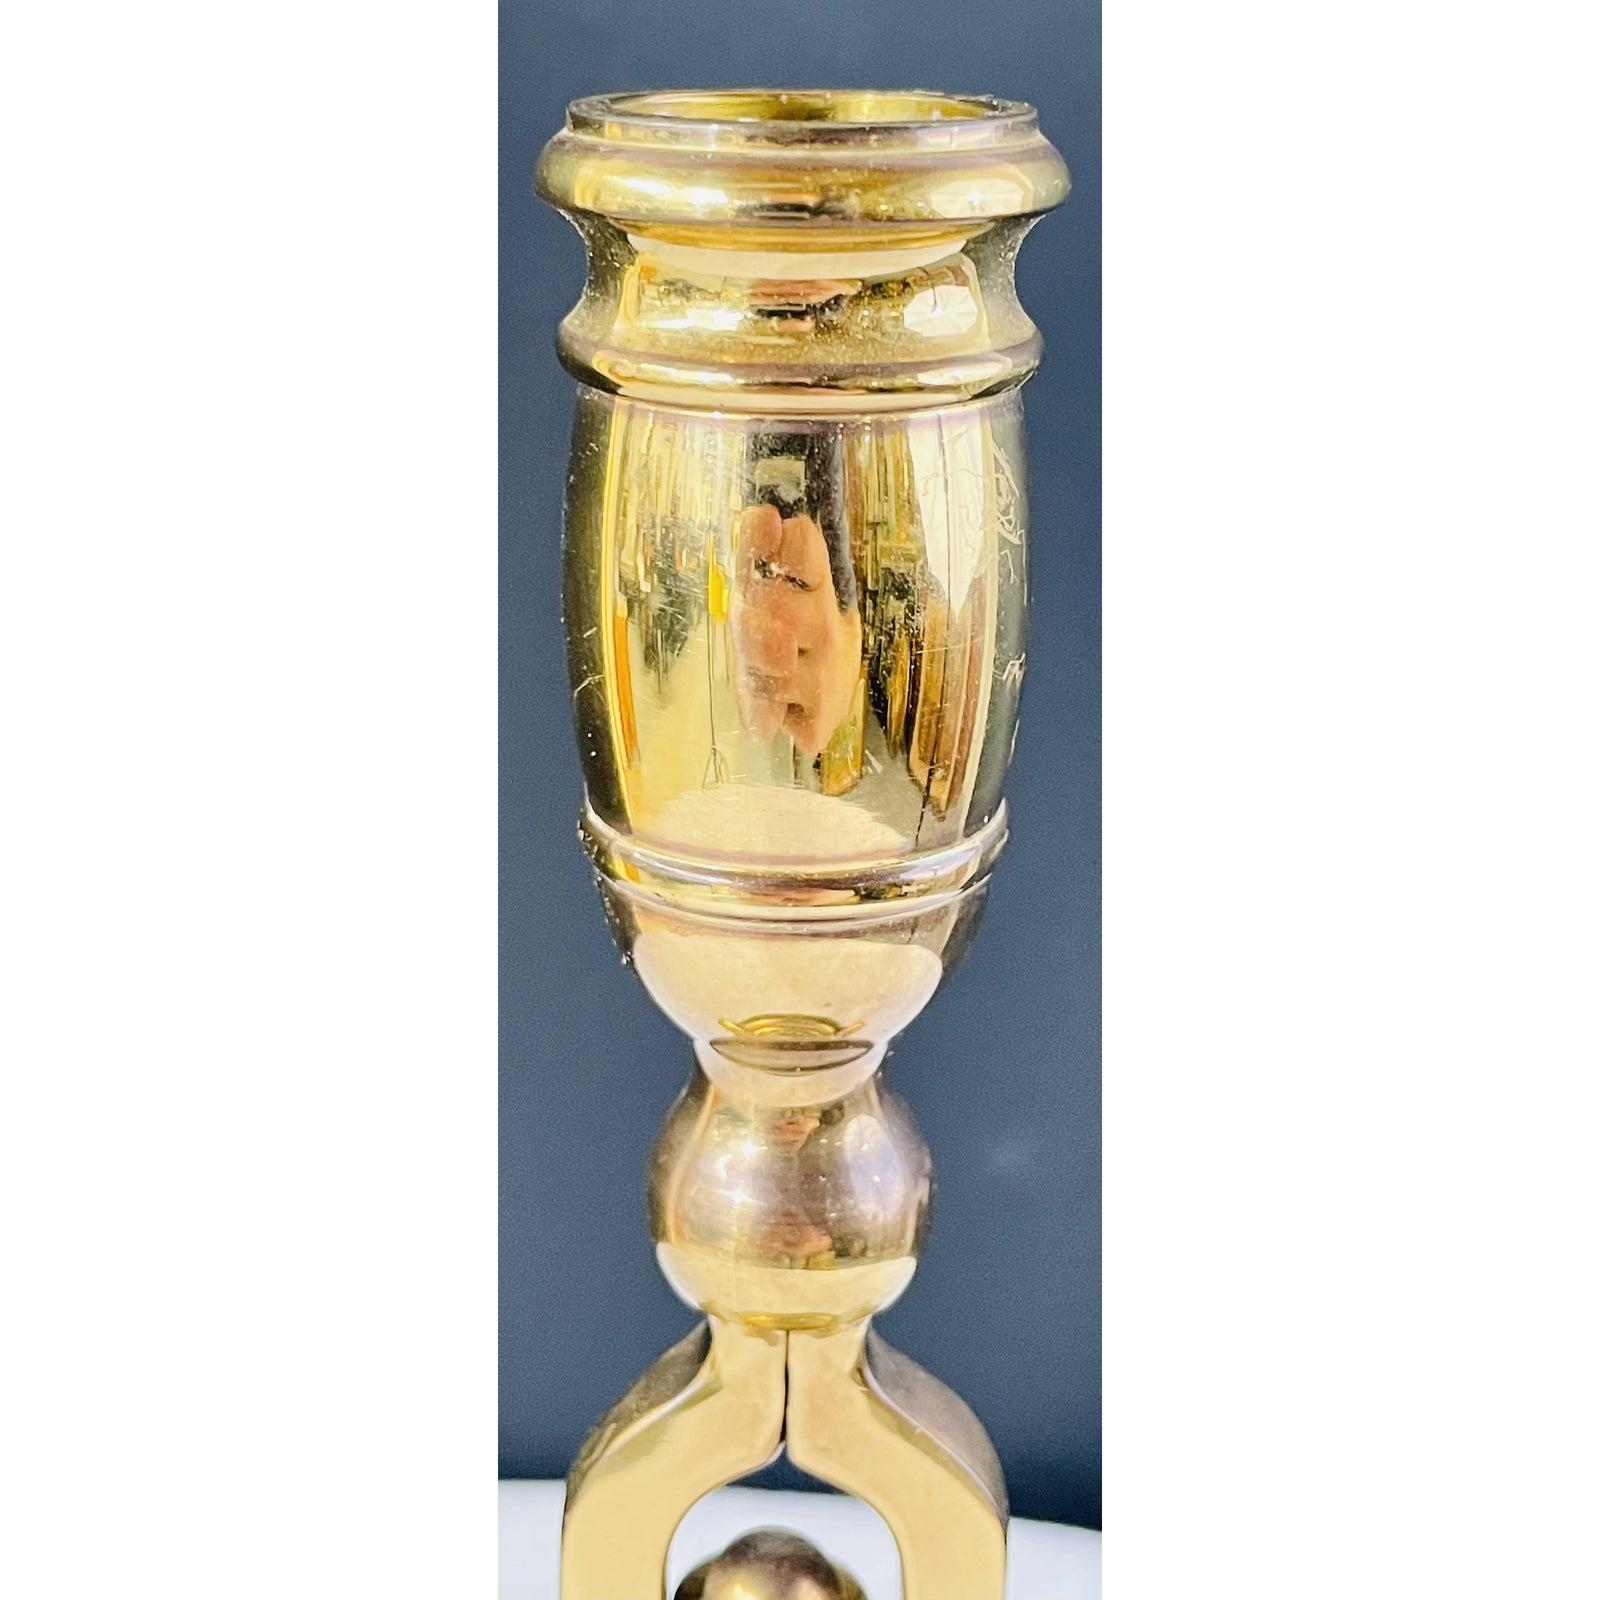 Ein antiker englischer viktorianischer Tavernen-Kerzenständer aus Messing mit Service-Glocke aus dem späten 19. Die Messingoberfläche hat einige altersbedingte Verfärbungen, aber insgesamt ist der Kerzenhalter in gutem Zustand und wird Ihre Hausbar